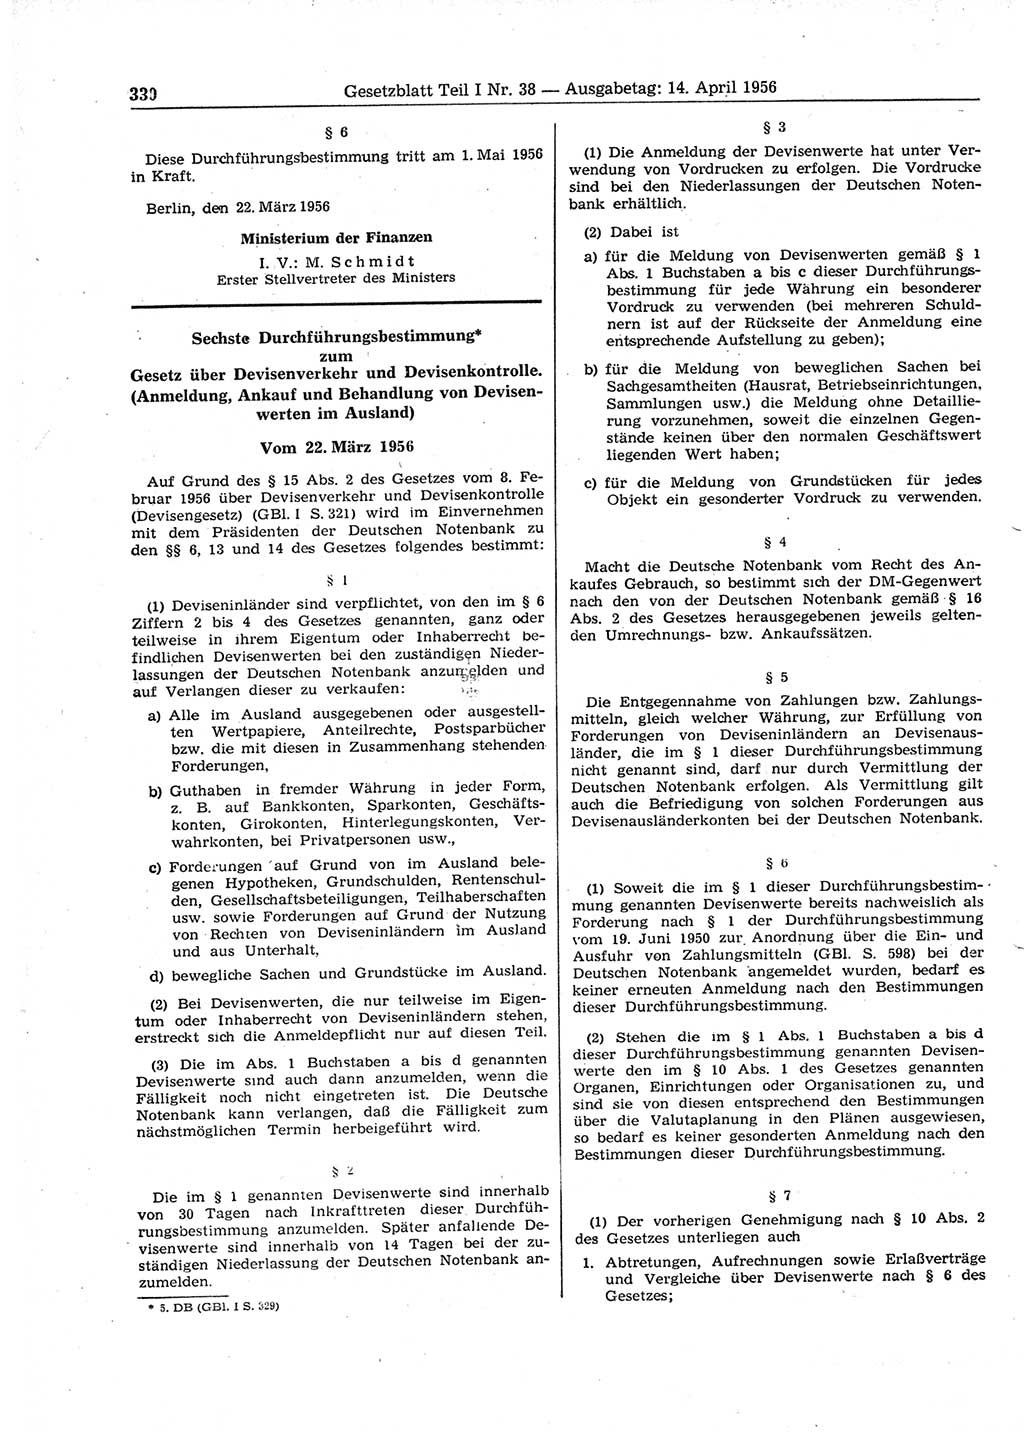 Gesetzblatt (GBl.) der Deutschen Demokratischen Republik (DDR) Teil Ⅰ 1956, Seite 330 (GBl. DDR Ⅰ 1956, S. 330)